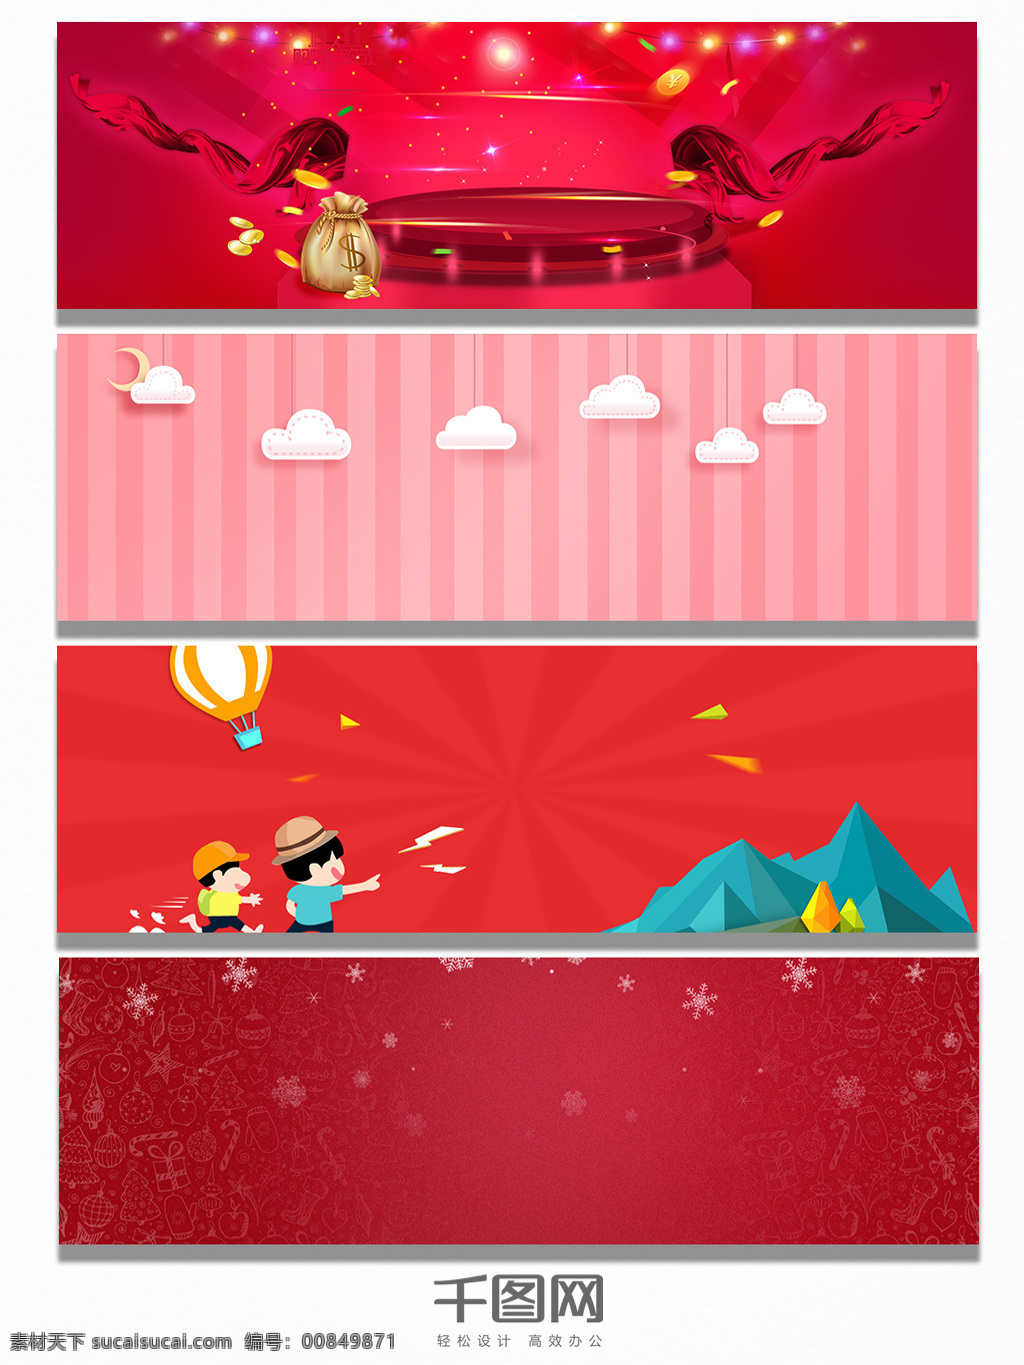 红色 系列 经典 背景 banner 橙红色 舞台 丝绸 雪花 质感 卡通 人物 条纹 云彩